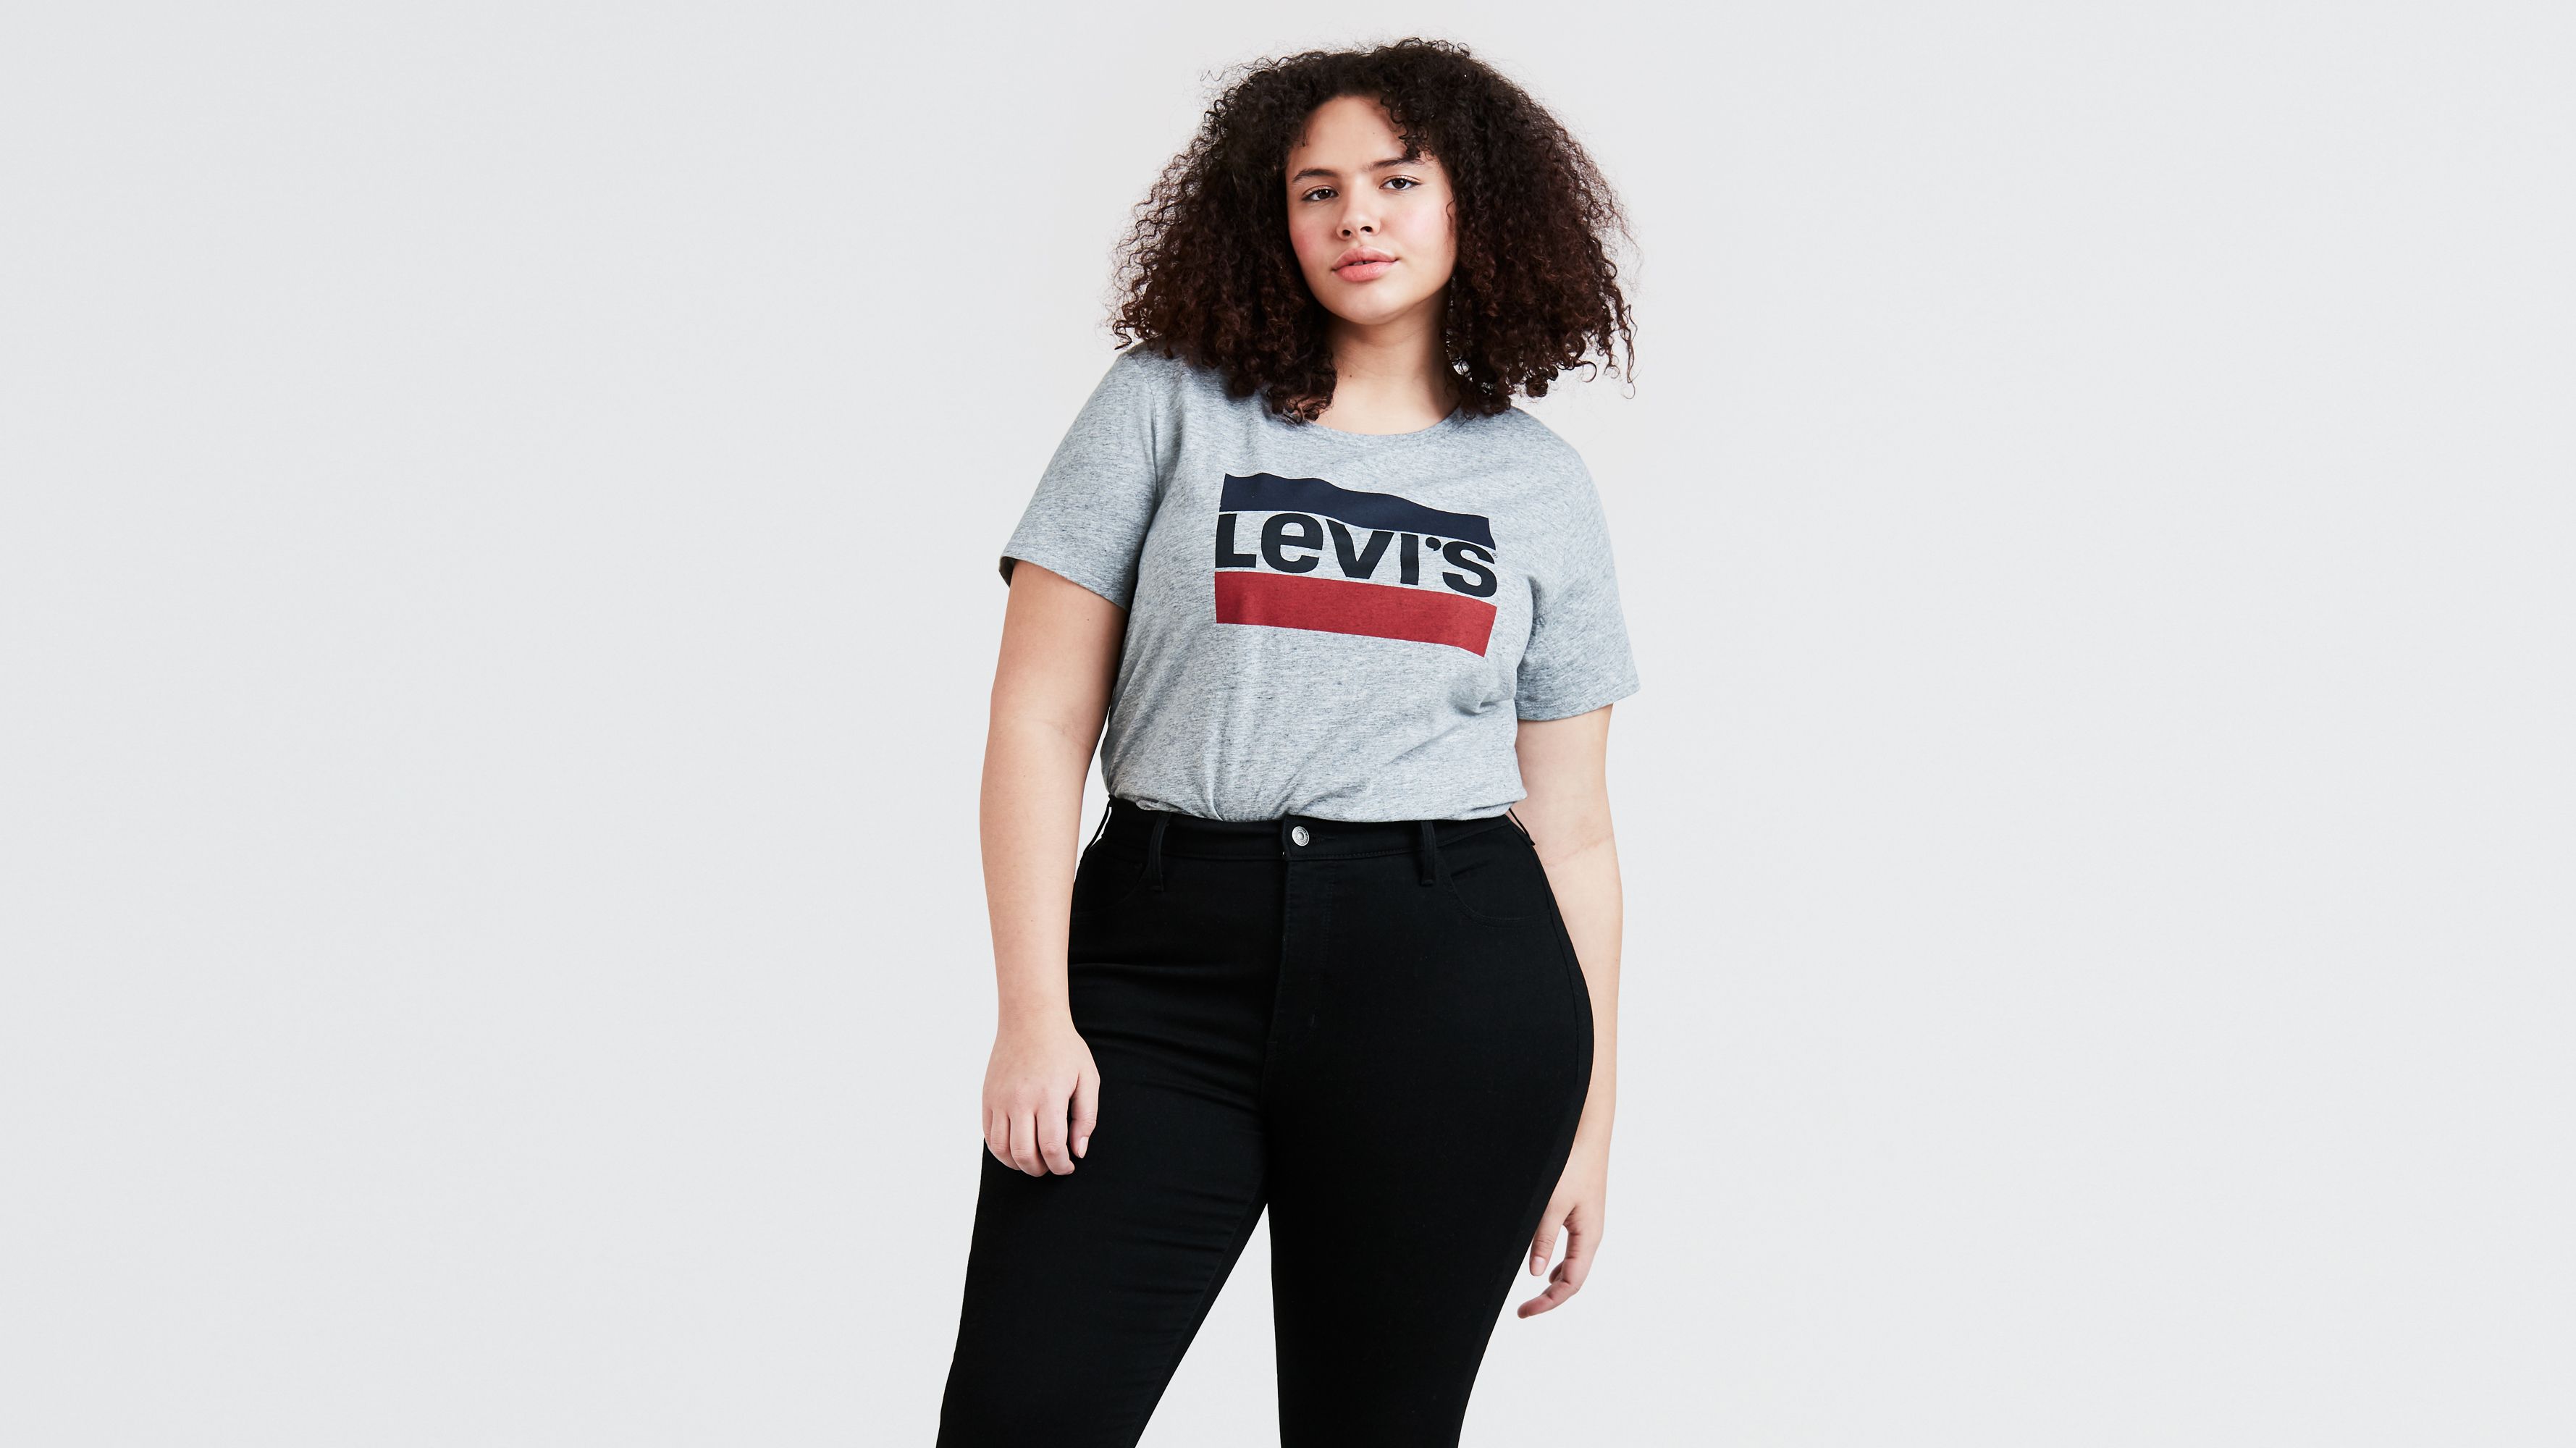 Women's Shirts, Denim Blouses, Tank Tops & T-Shirts | Levi's® US